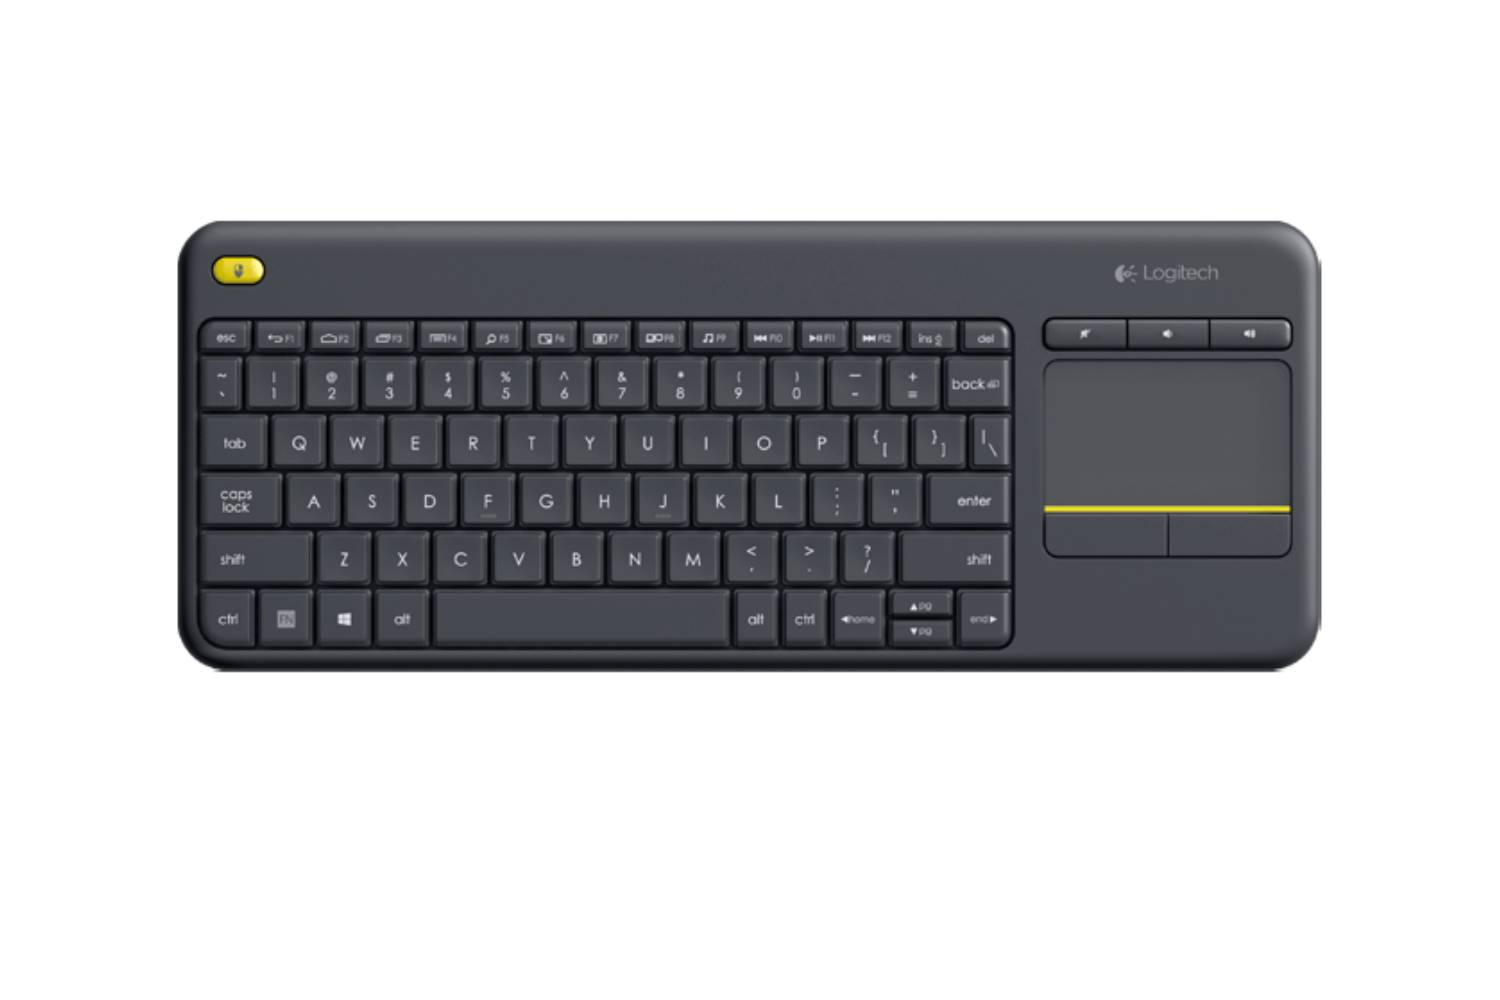 Logitech K400 plus Wireless Touch Keyboard